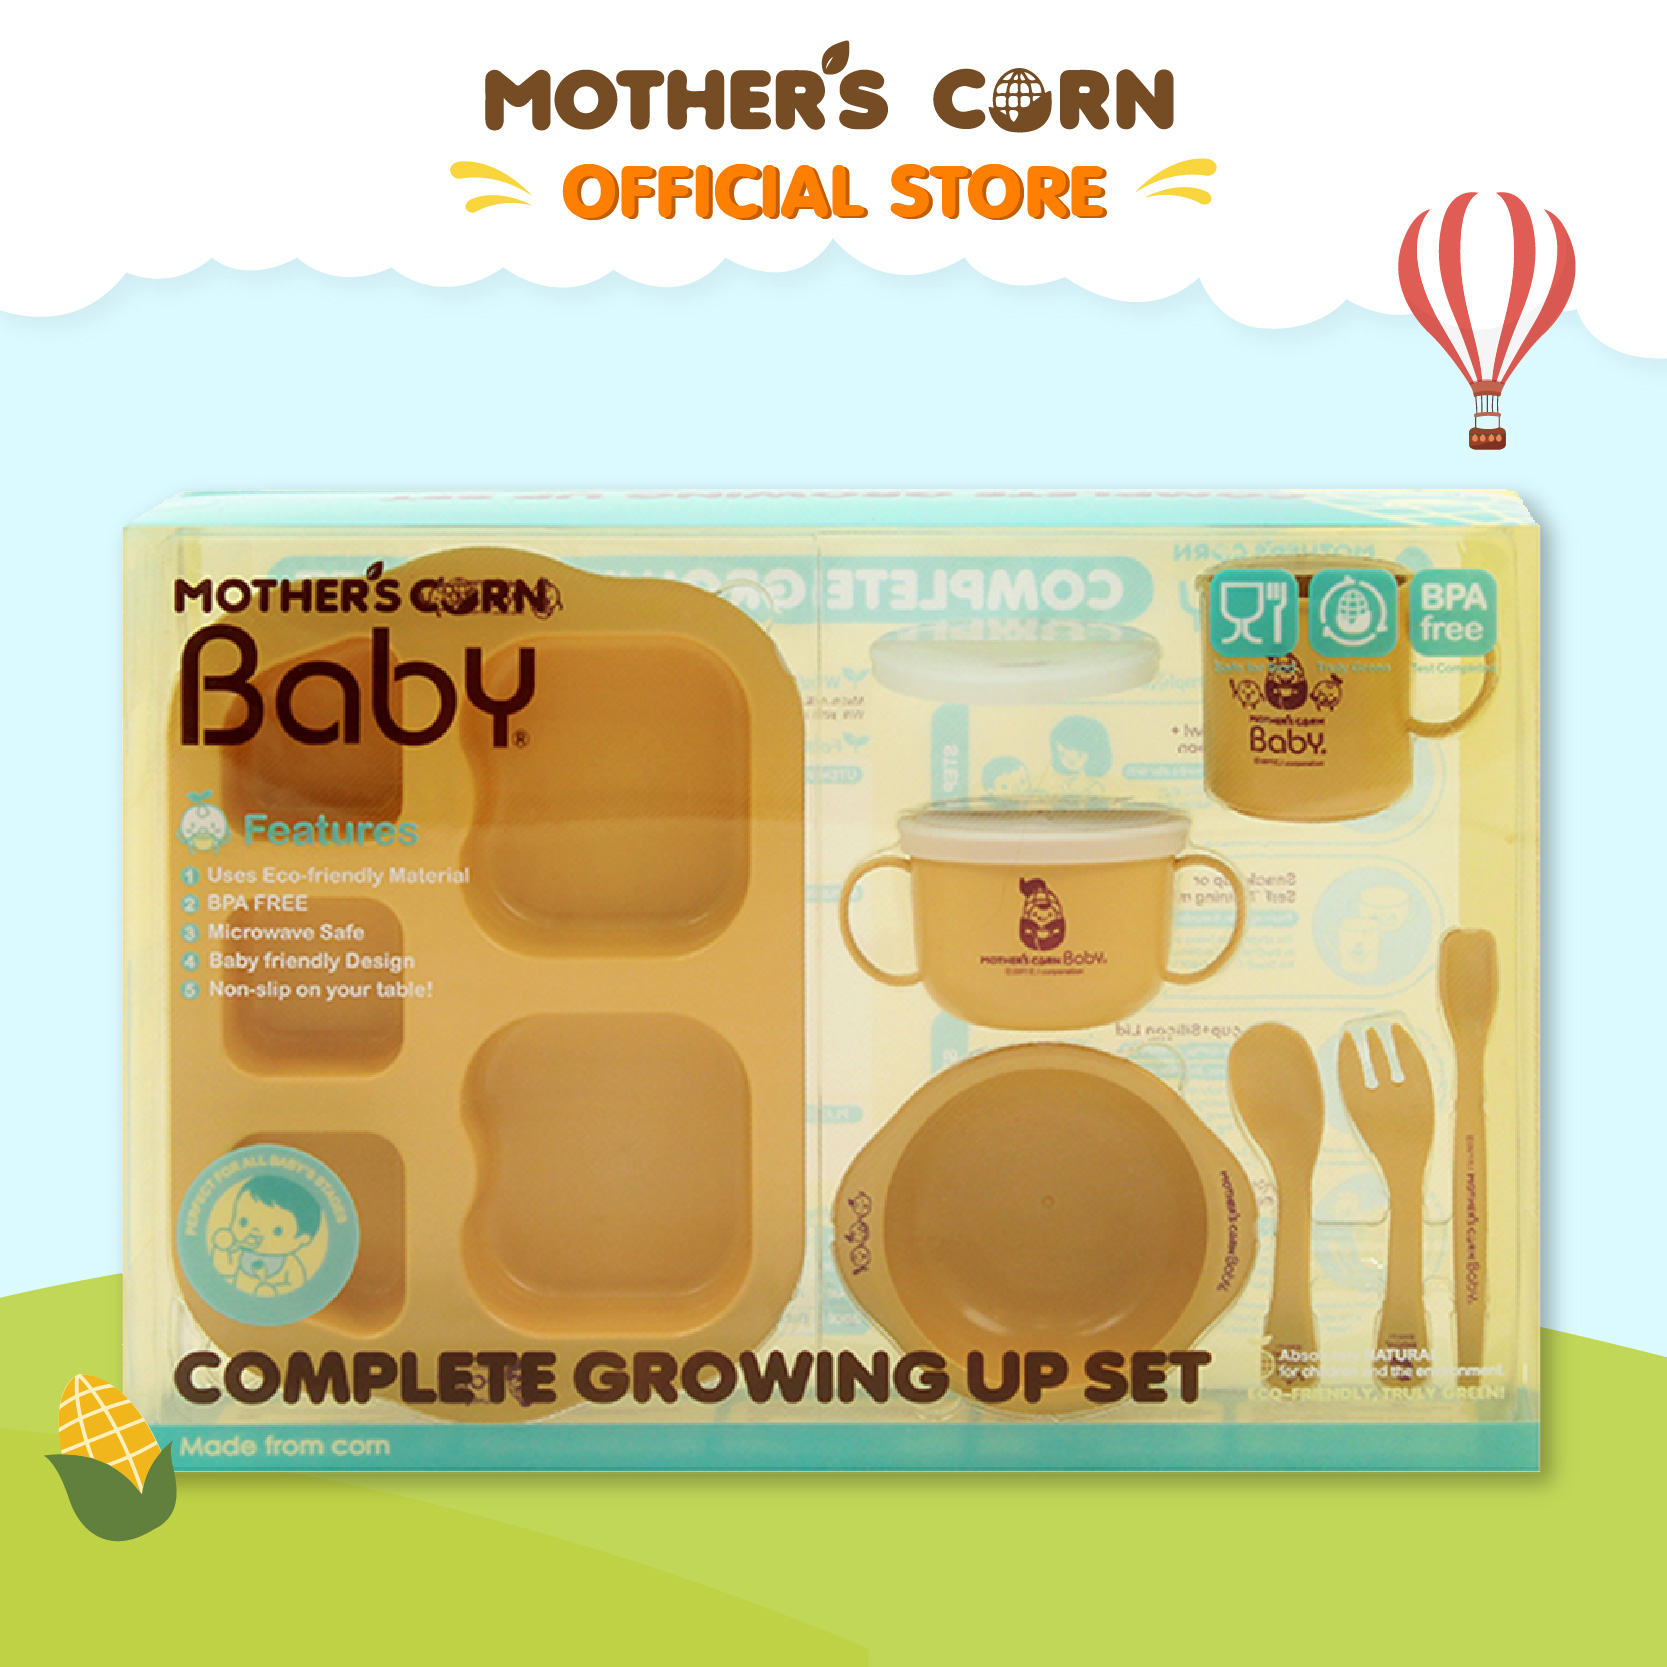 ซื้อที่ไหน Mother's Corn Complete Growing Up Set มาเธอร์คอน ชุดจานชามสำหรับเด็กเล็ก